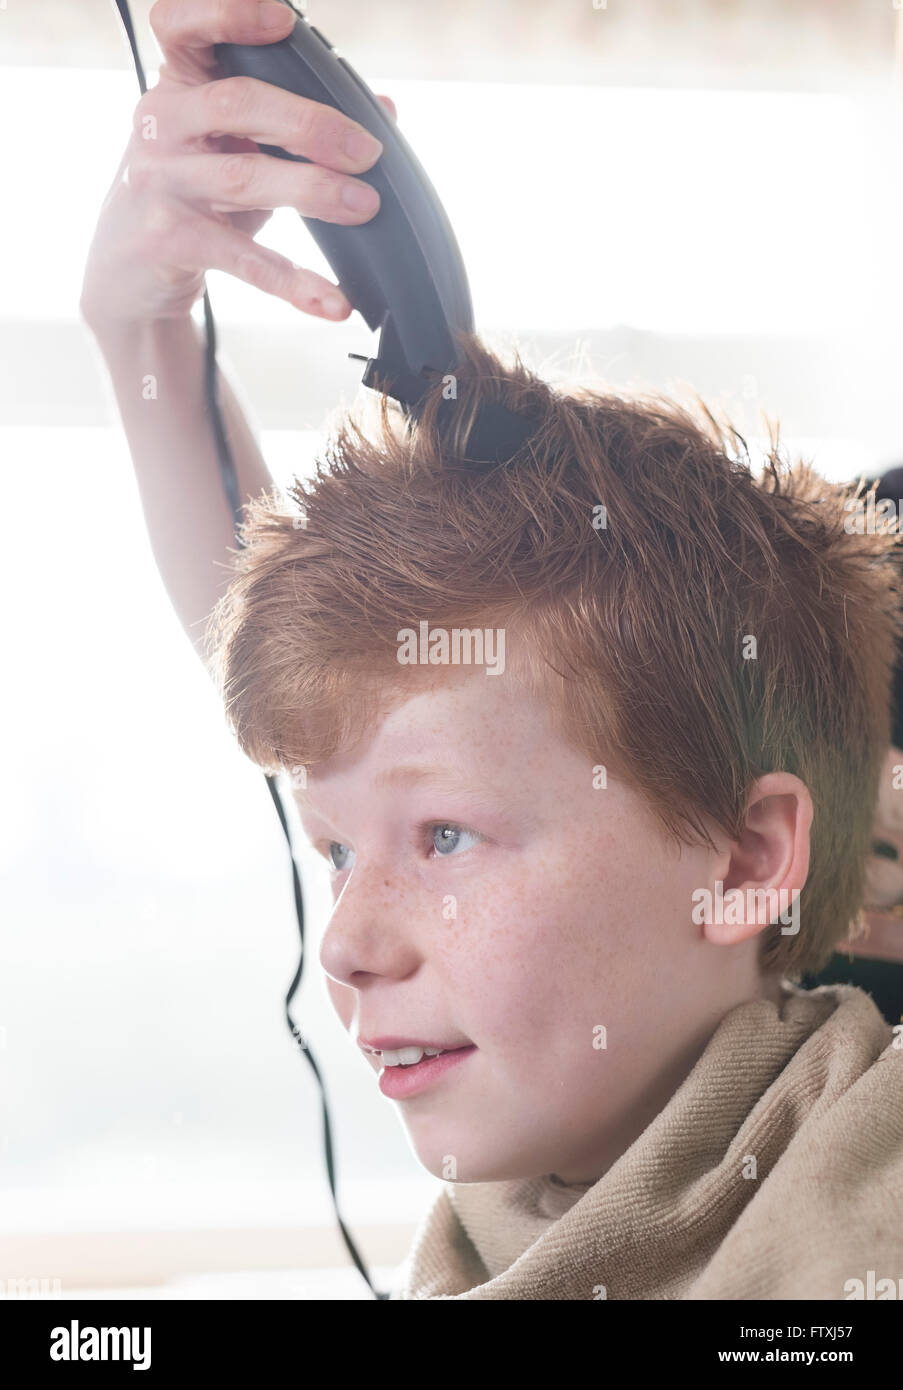 Ein Junge seine Haare schneiden mit Schere und Clippers Stockfotografie -  Alamy